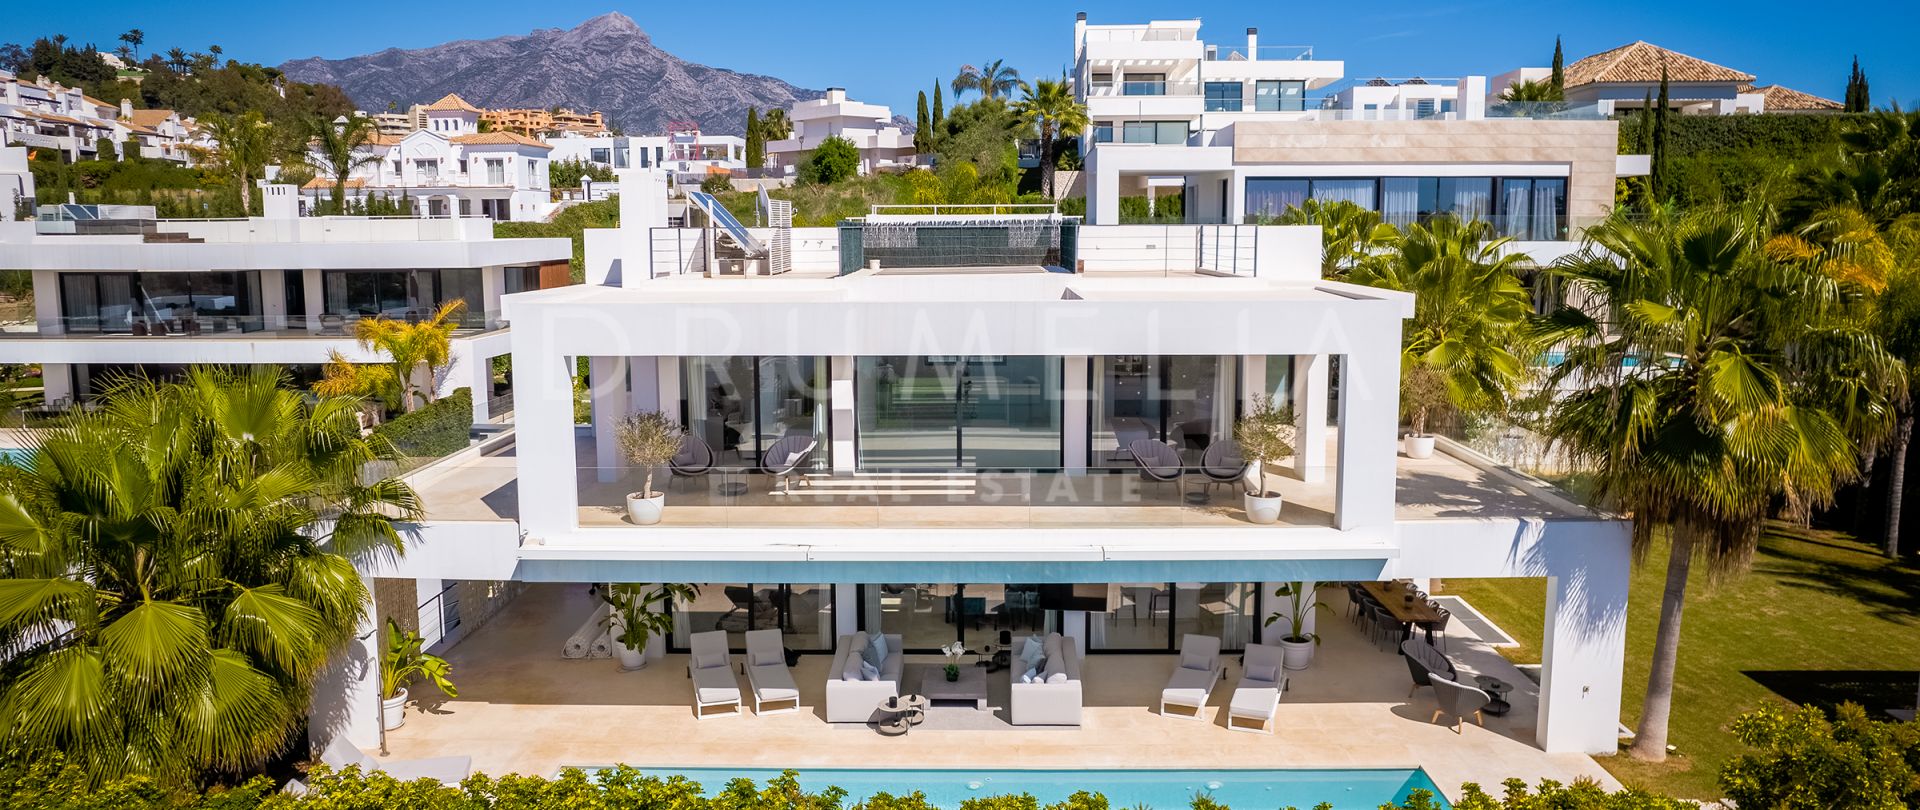 Refinada villa moderna de lujo con hermosas vistas en Los Olivos, Nueva Andalucia, Marbella